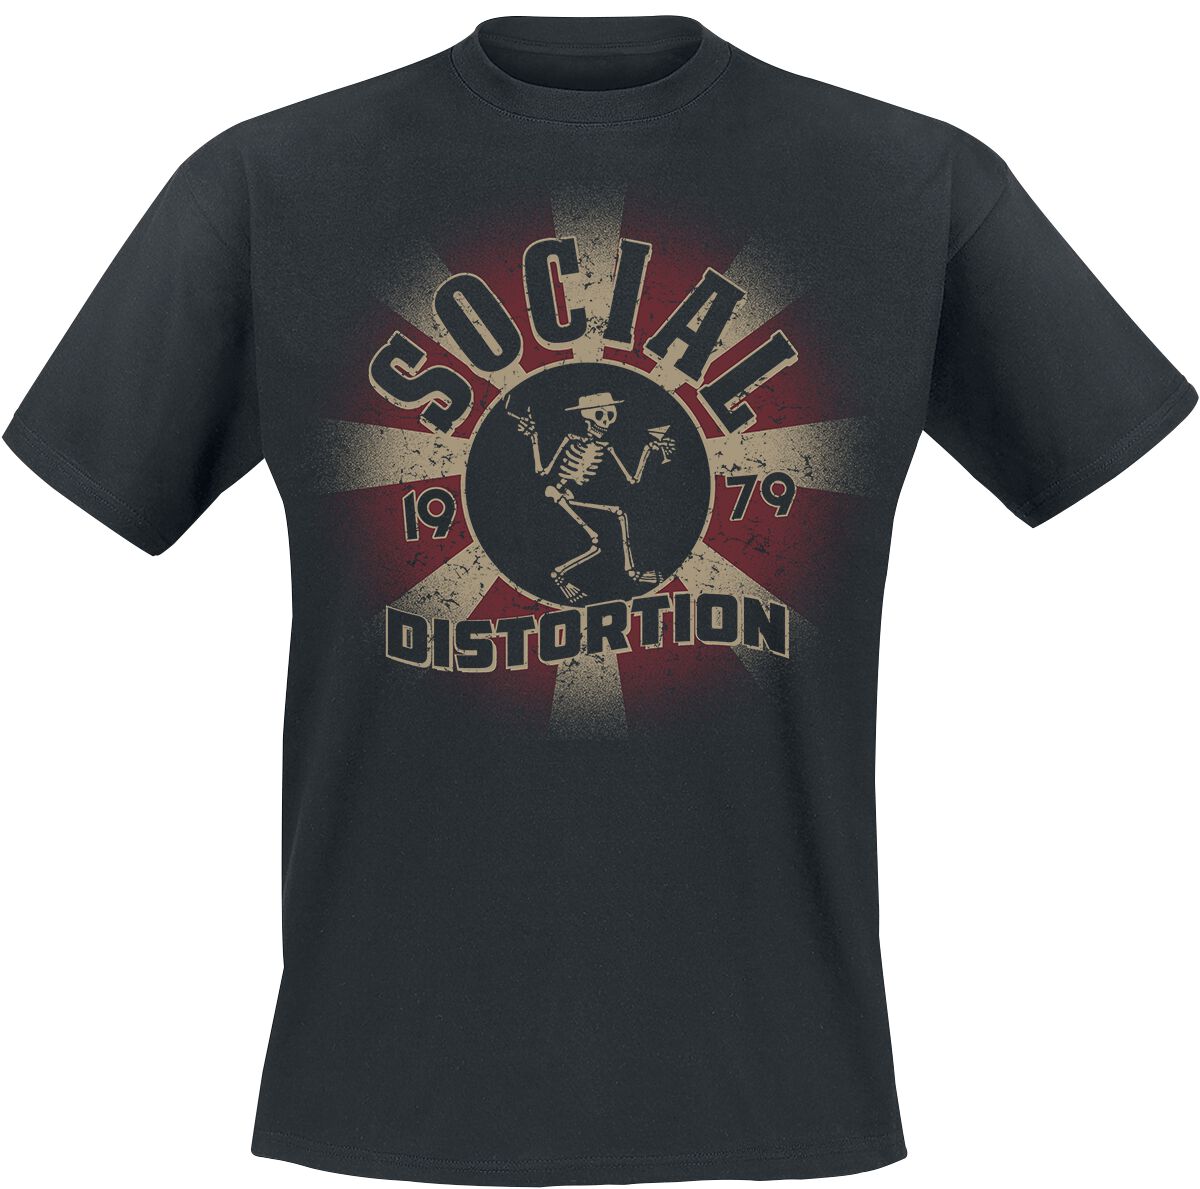 Social Distortion T-Shirt - Eclipse - M bis 3XL - für Männer - Größe M - schwarz  - Lizenziertes Merchandise!